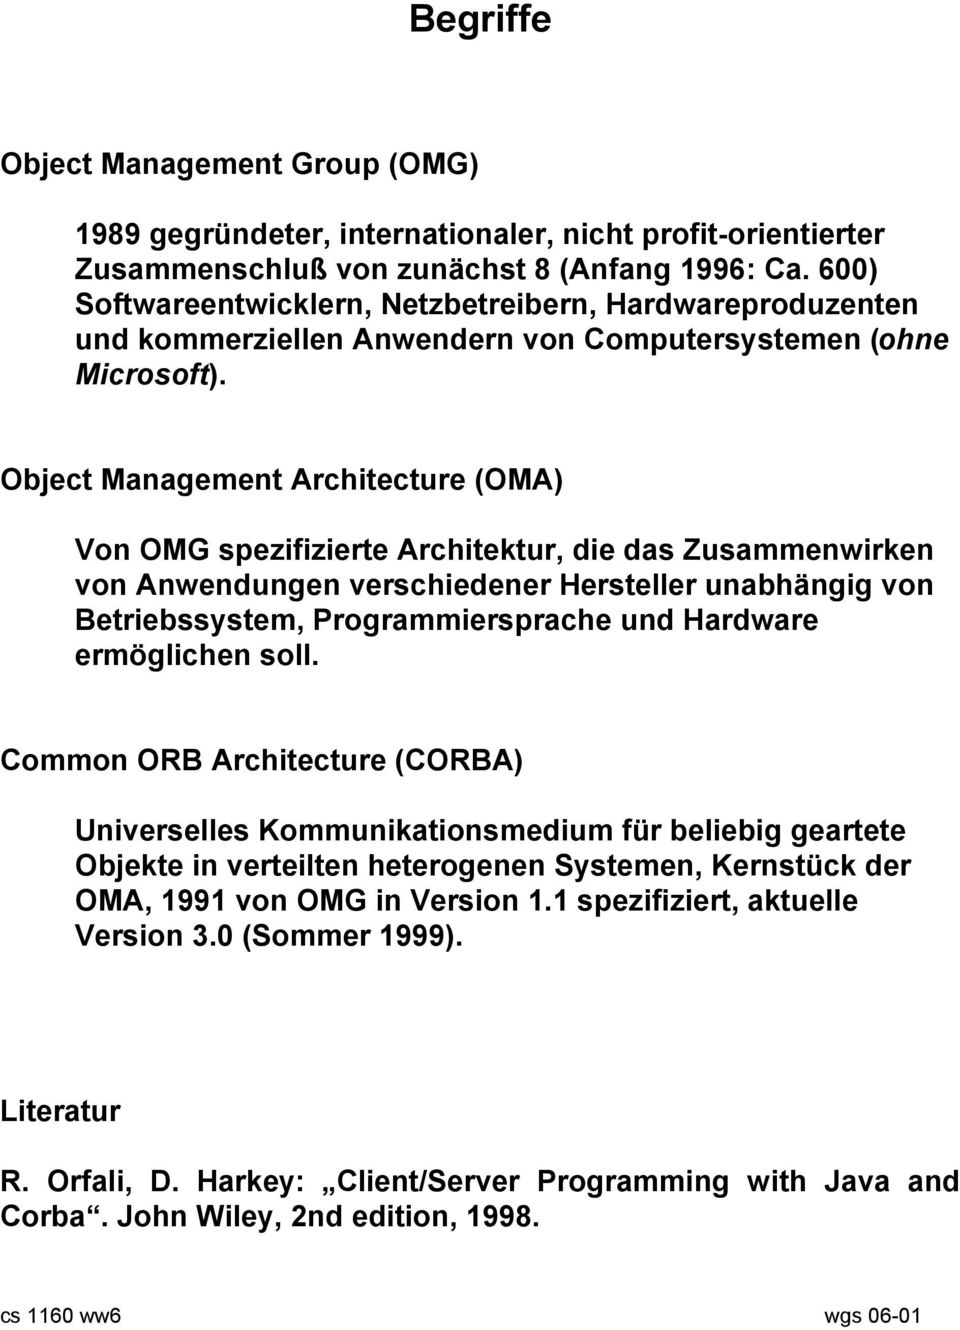 Object Management Architecture (OMA) Von OMG spezifizierte Architektur, die das Zusammenwirken von Anwendungen verschiedener Hersteller unabhängig von Betriebssystem, Programmiersprache und Hardware